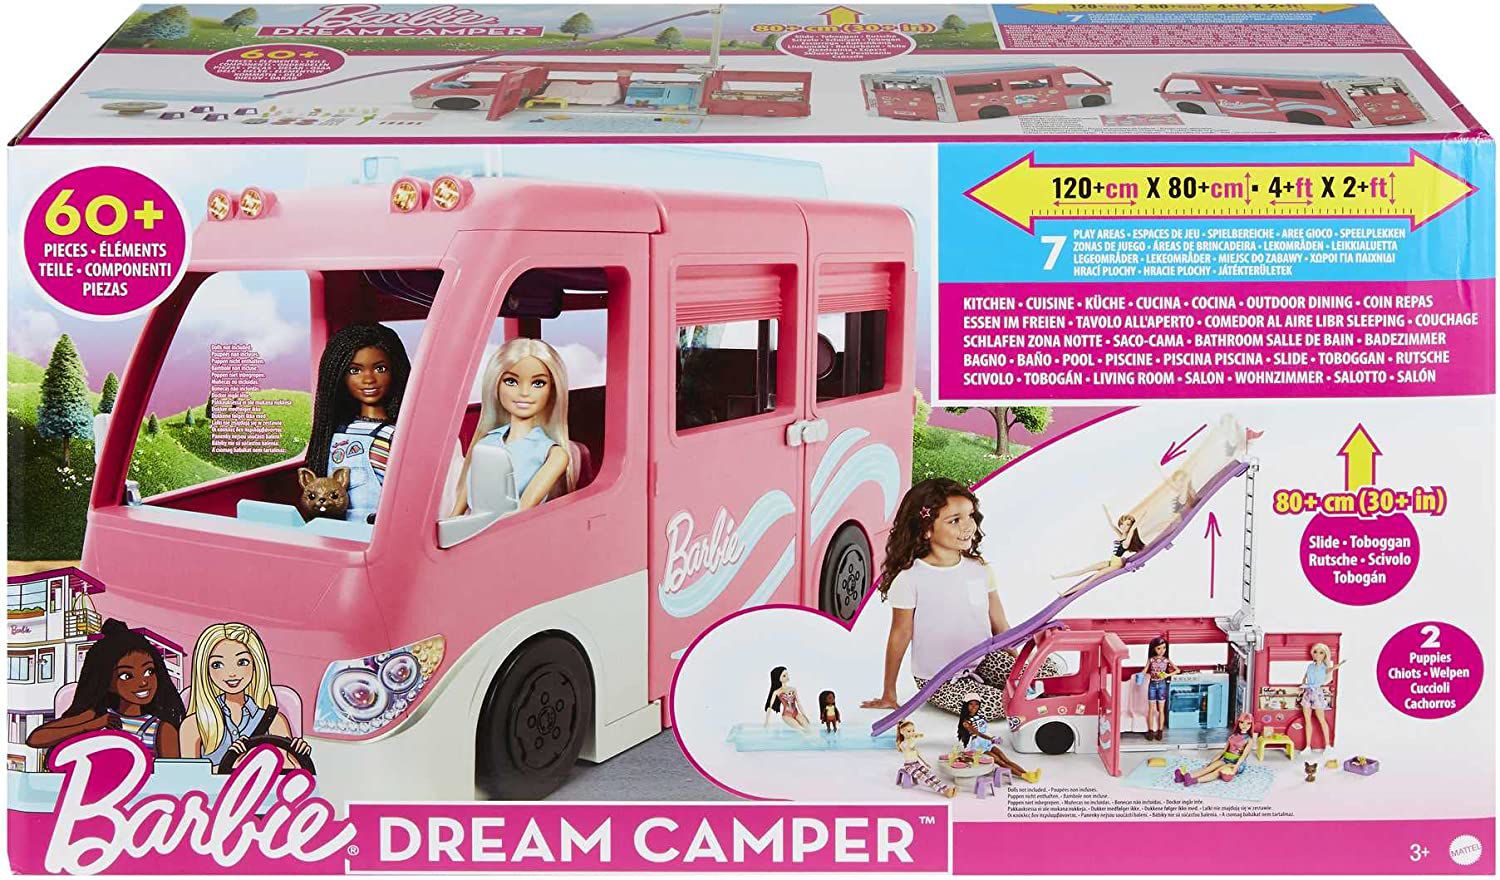 Casa dos Sonhos da Barbie com Acessorios - 75cm - Mattel